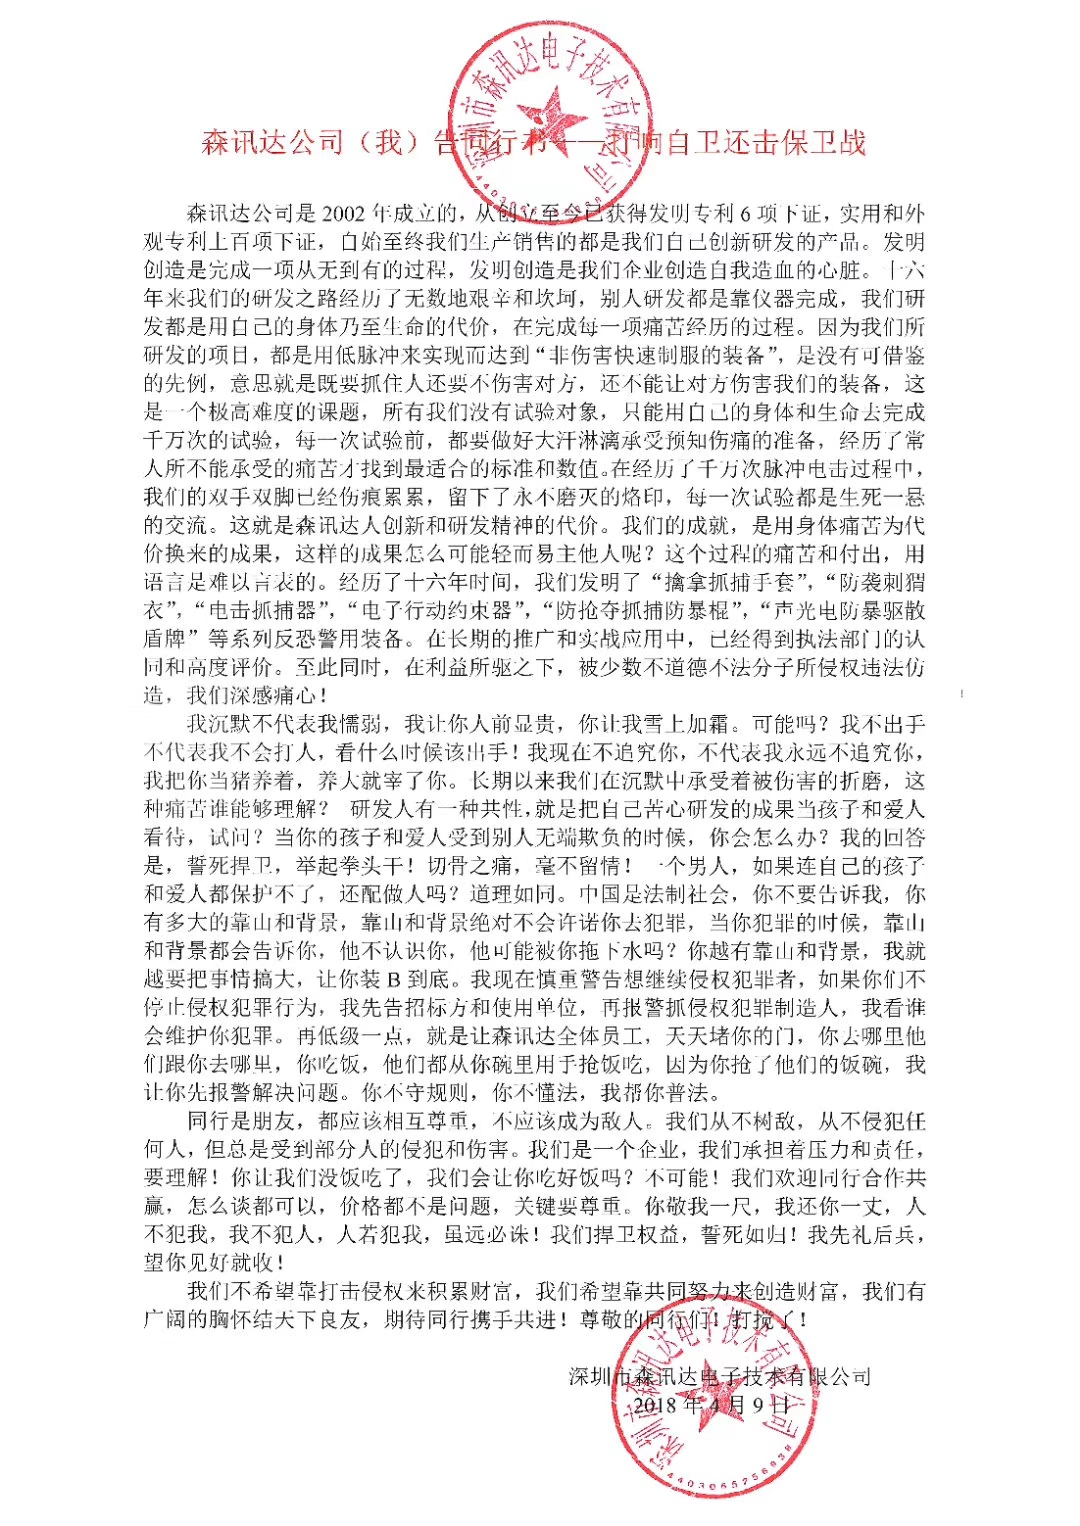 深圳市森讯达电子技术有限公司郑重声明 侵犯本公司知识产权者必须停止一切侵权行为(组图)